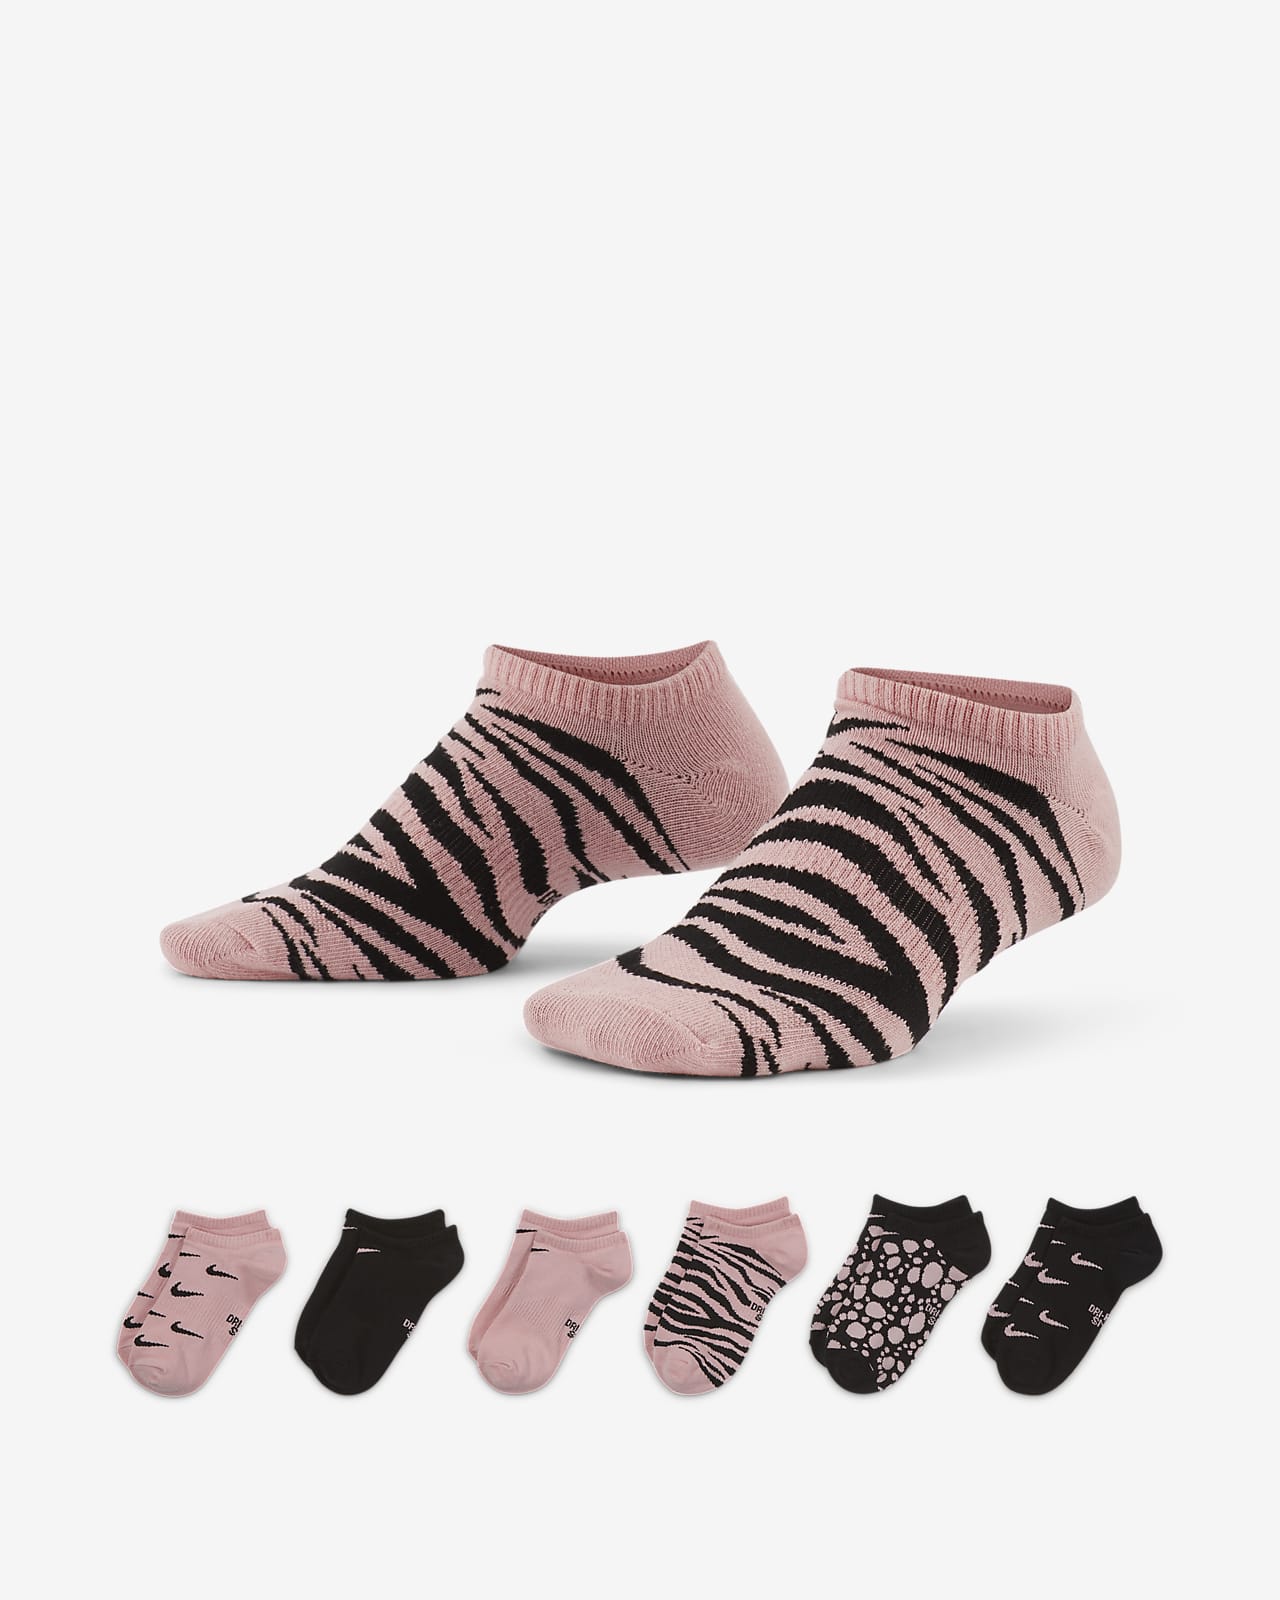 Ανάλαφρες χαμηλές κάλτσες Nike Everyday για μεγάλα παιδιά (έξι ζευγάρια)